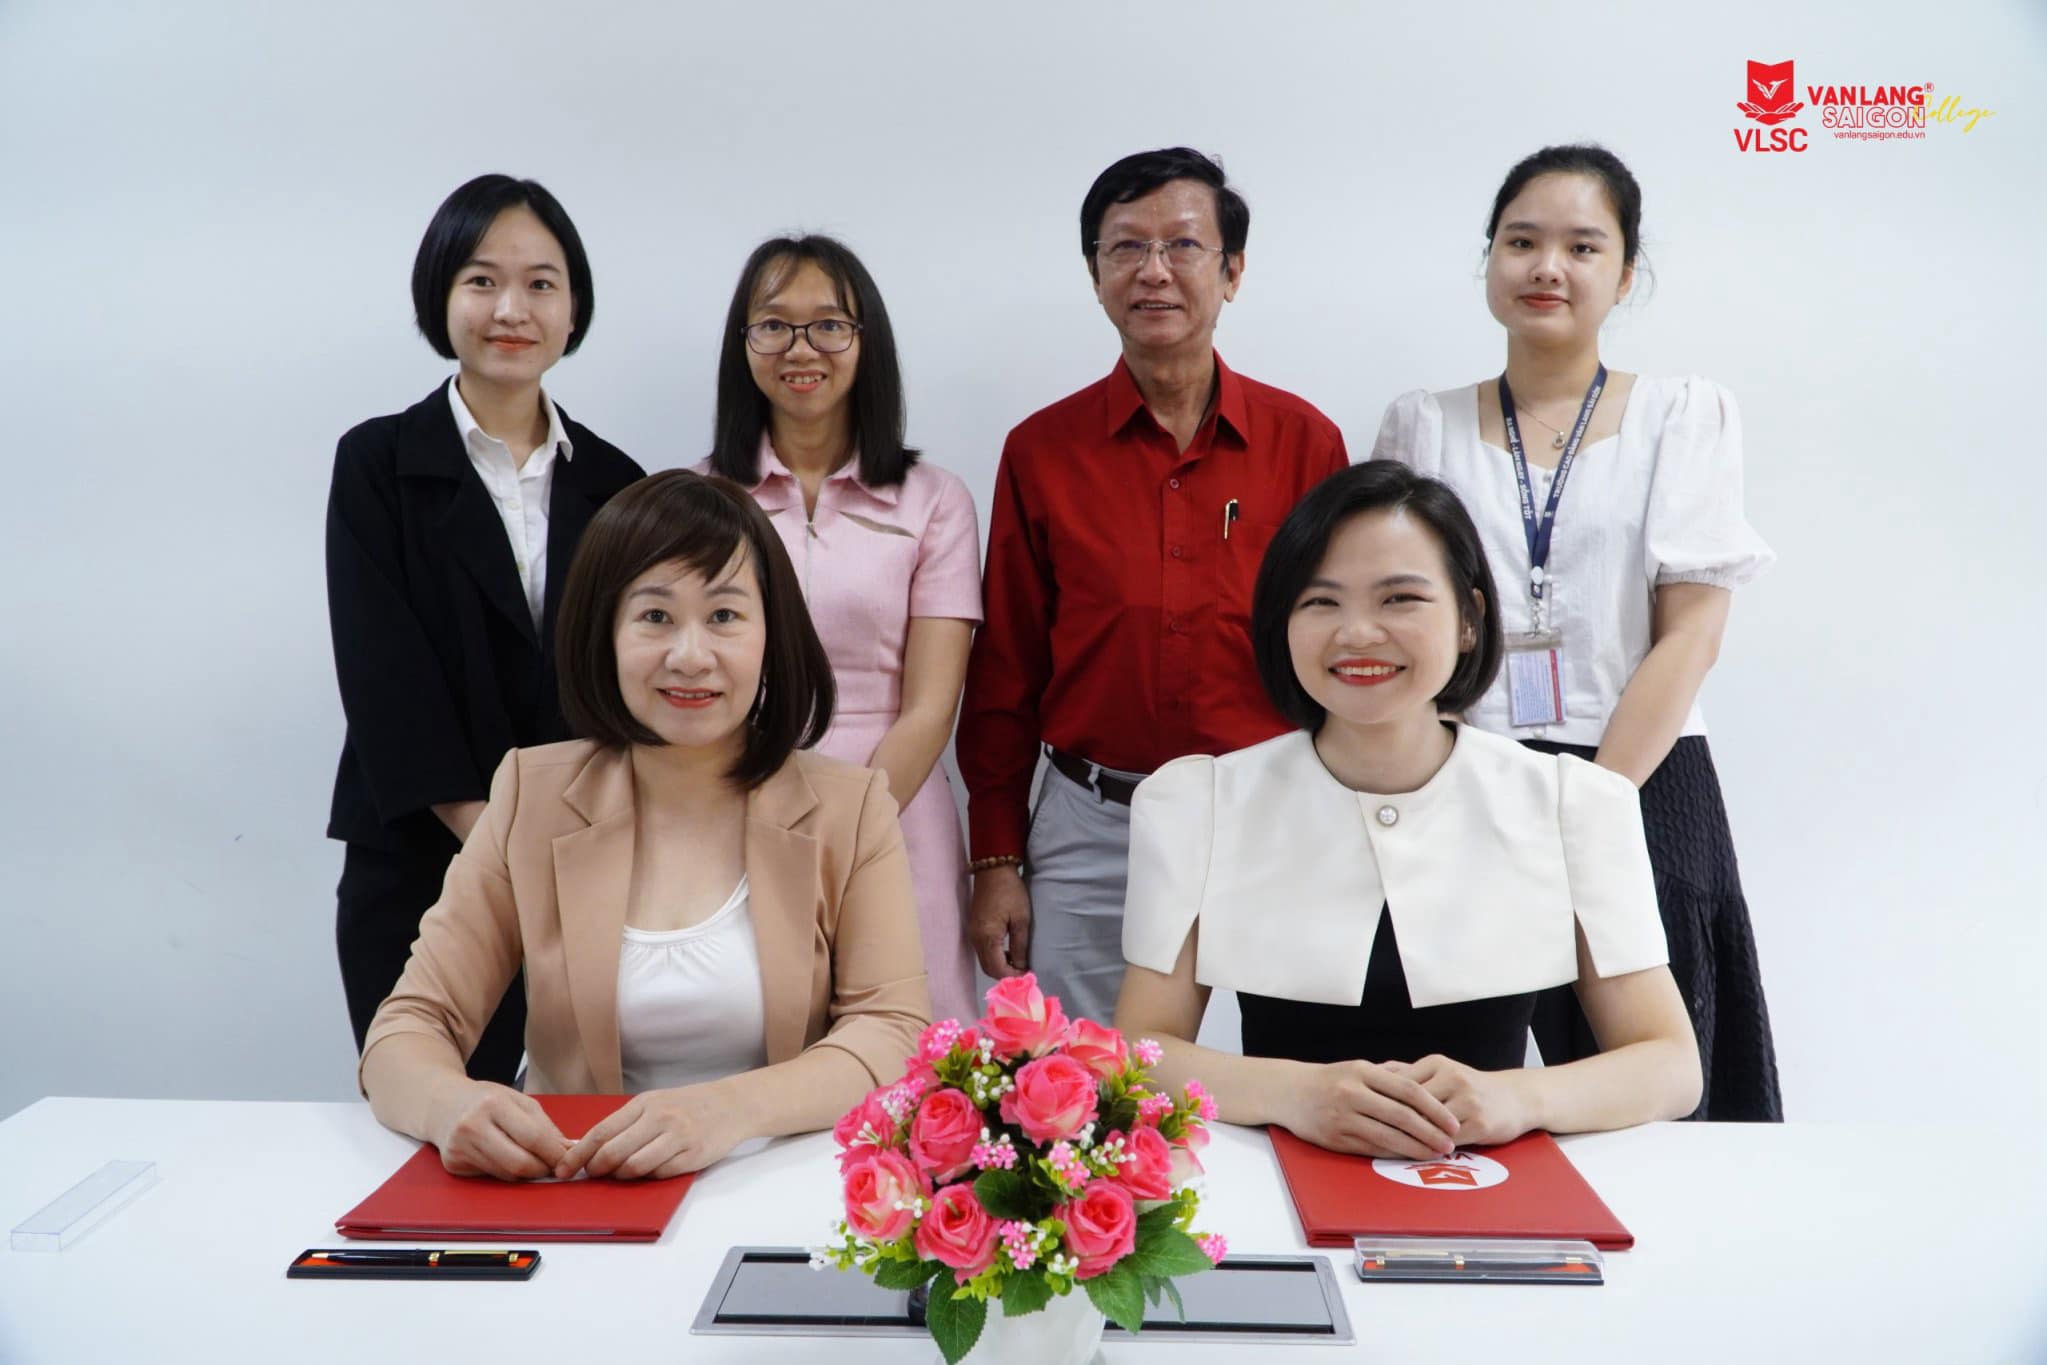 Văn Lang Sài Gòn thêm một đối tác là kết nối thêm nhiều cơ hội phát triển cho sinh viên